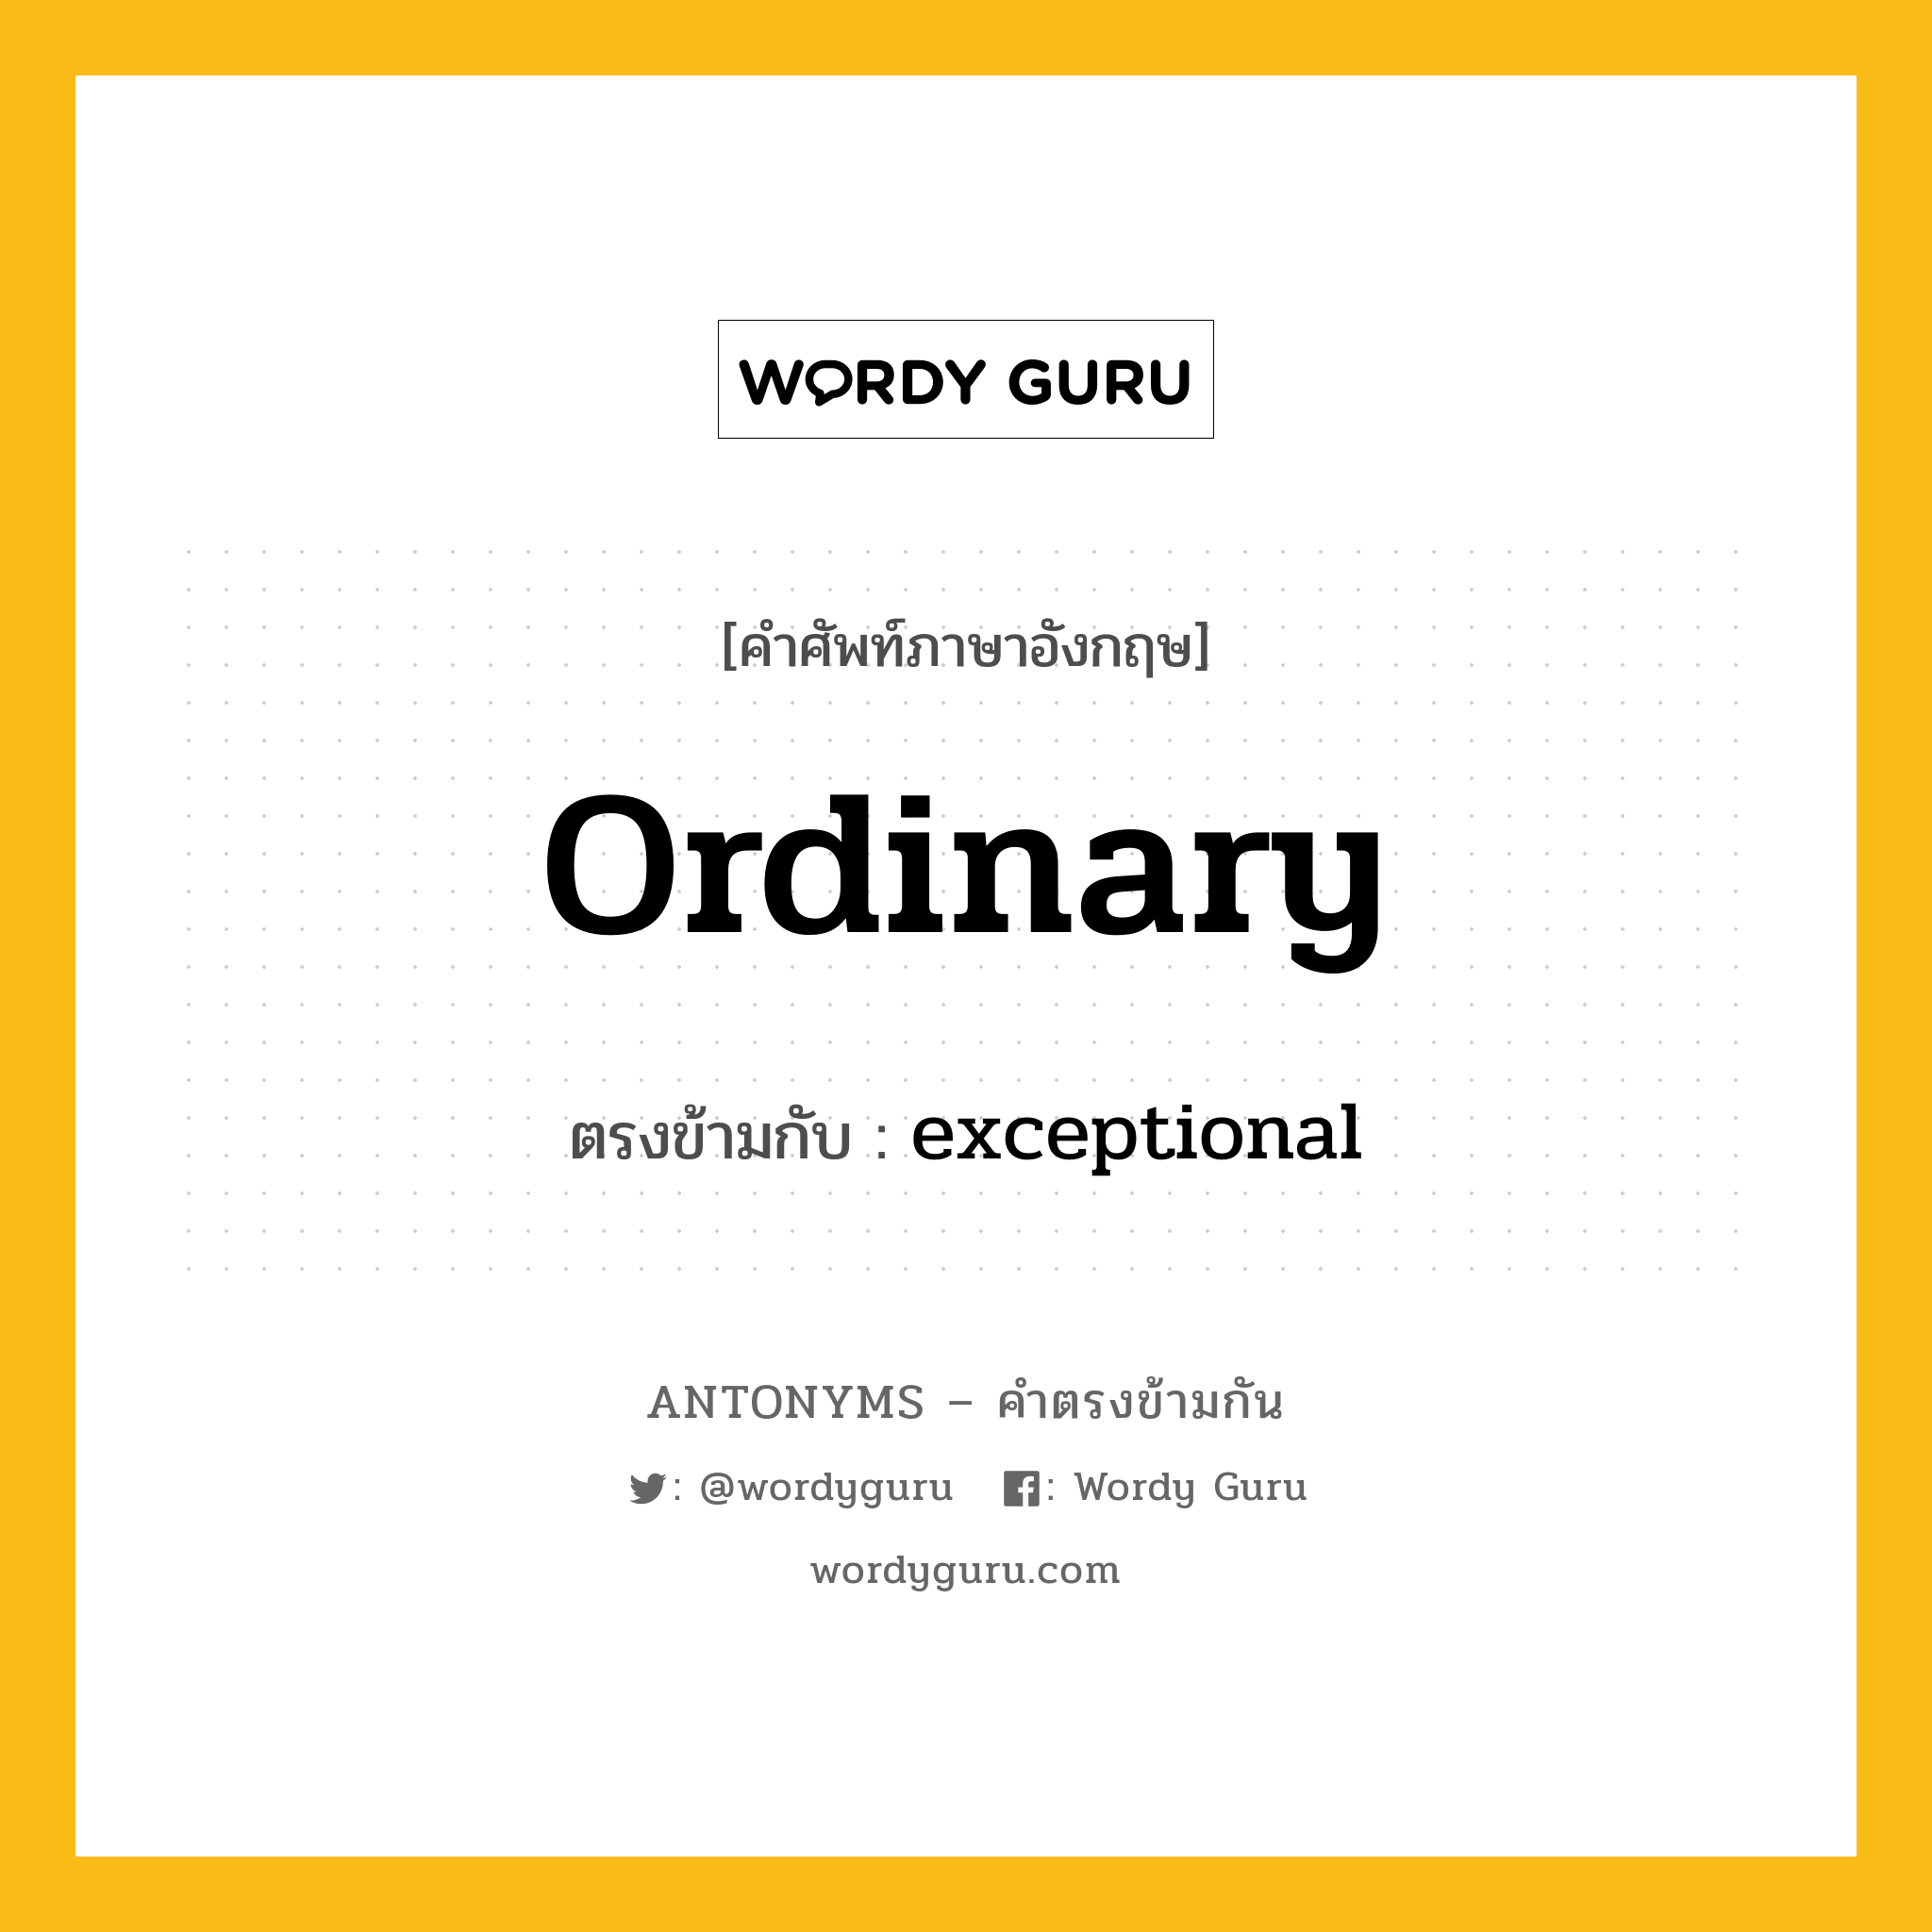 ordinary เป็นคำตรงข้ามกับคำไหนบ้าง?, คำศัพท์ภาษาอังกฤษ ordinary ตรงข้ามกับ exceptional หมวด exceptional